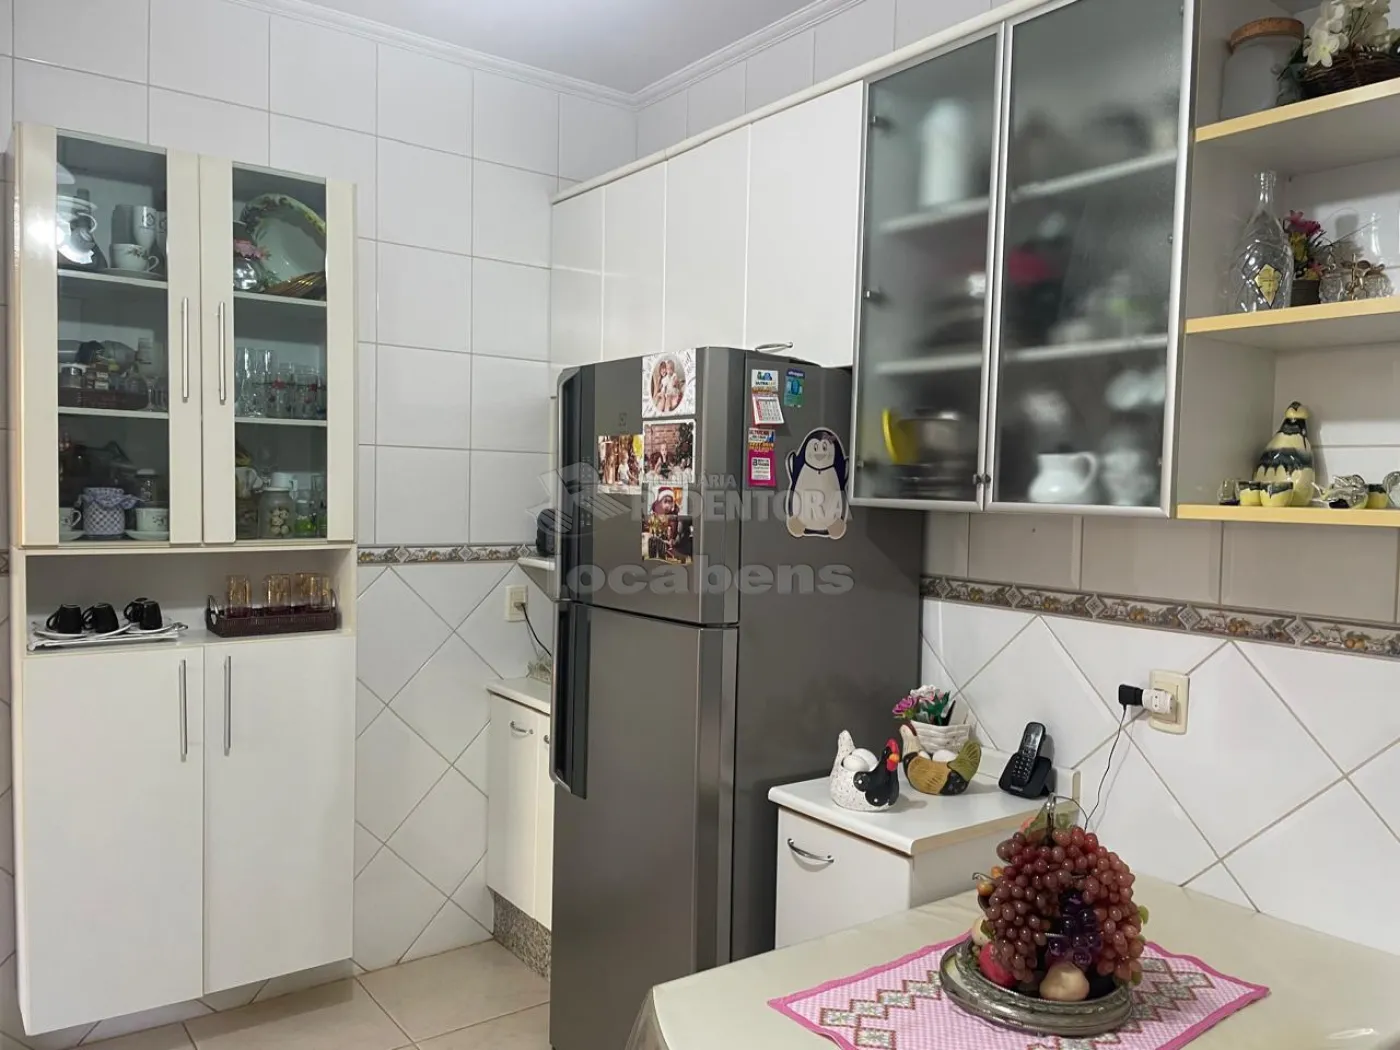 Comprar Casa / Padrão em São José do Rio Preto R$ 750.000,00 - Foto 28